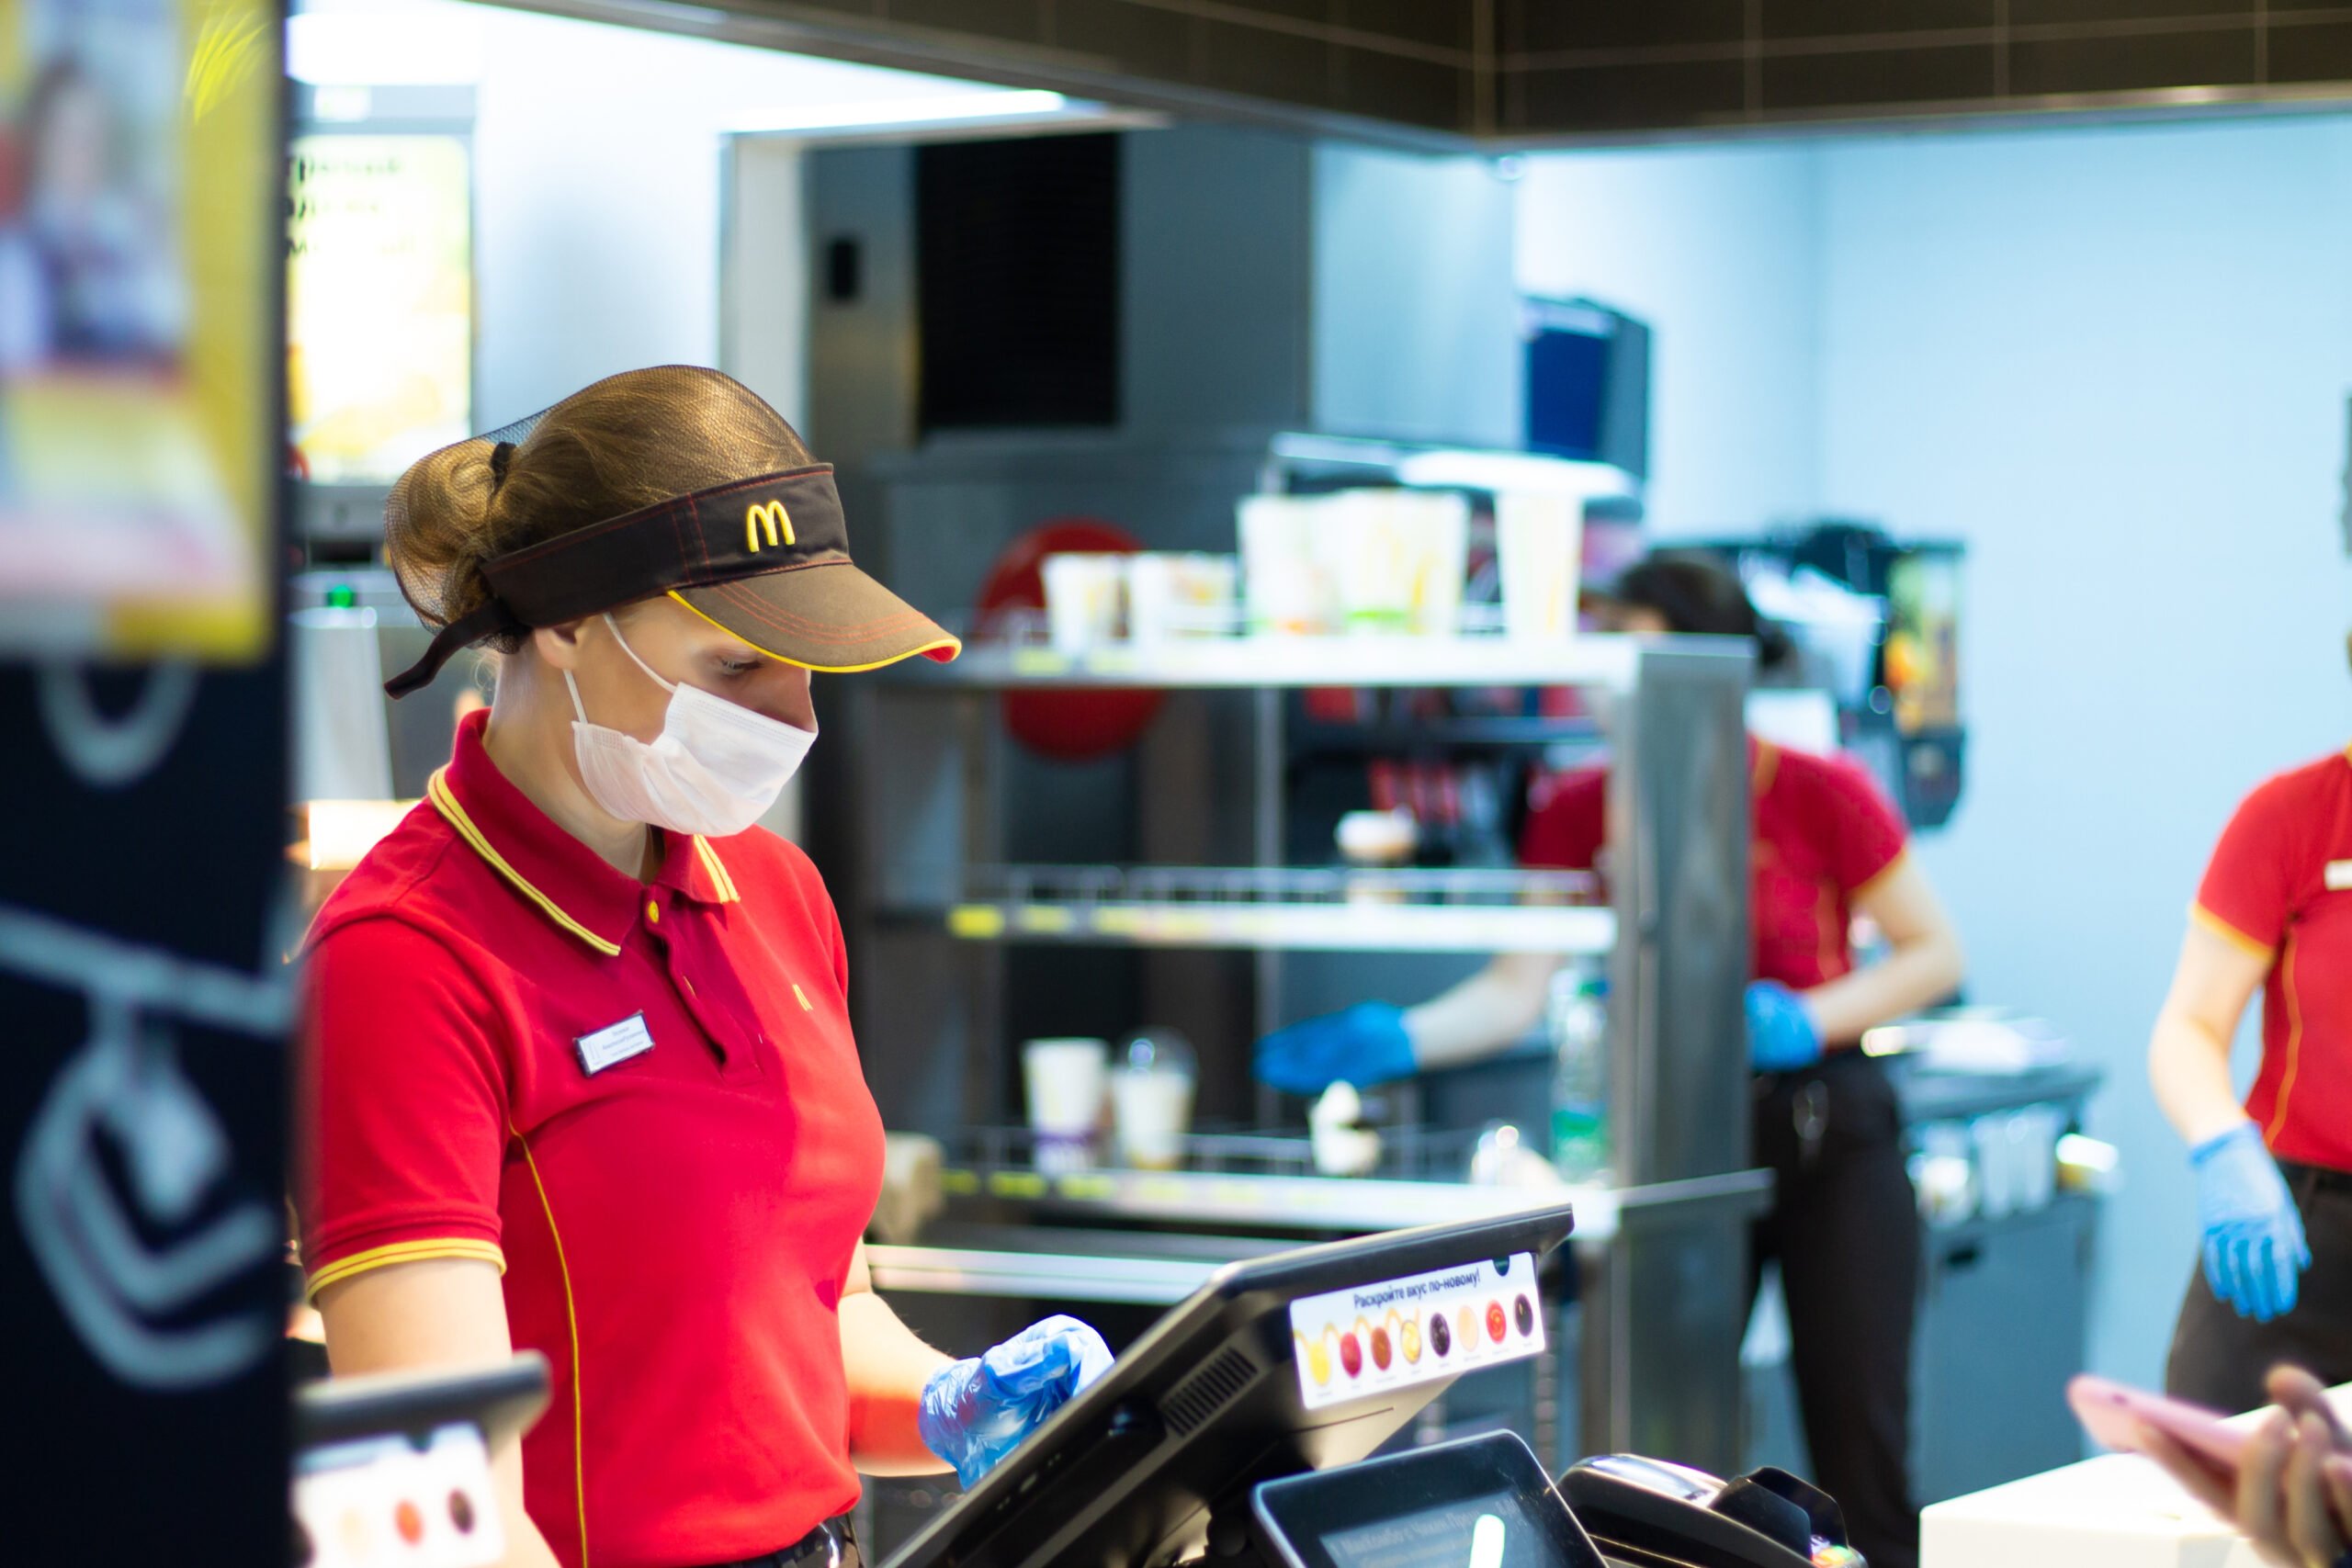 Pedido estranhíssimo deixa funcionários do McDonald's confusos